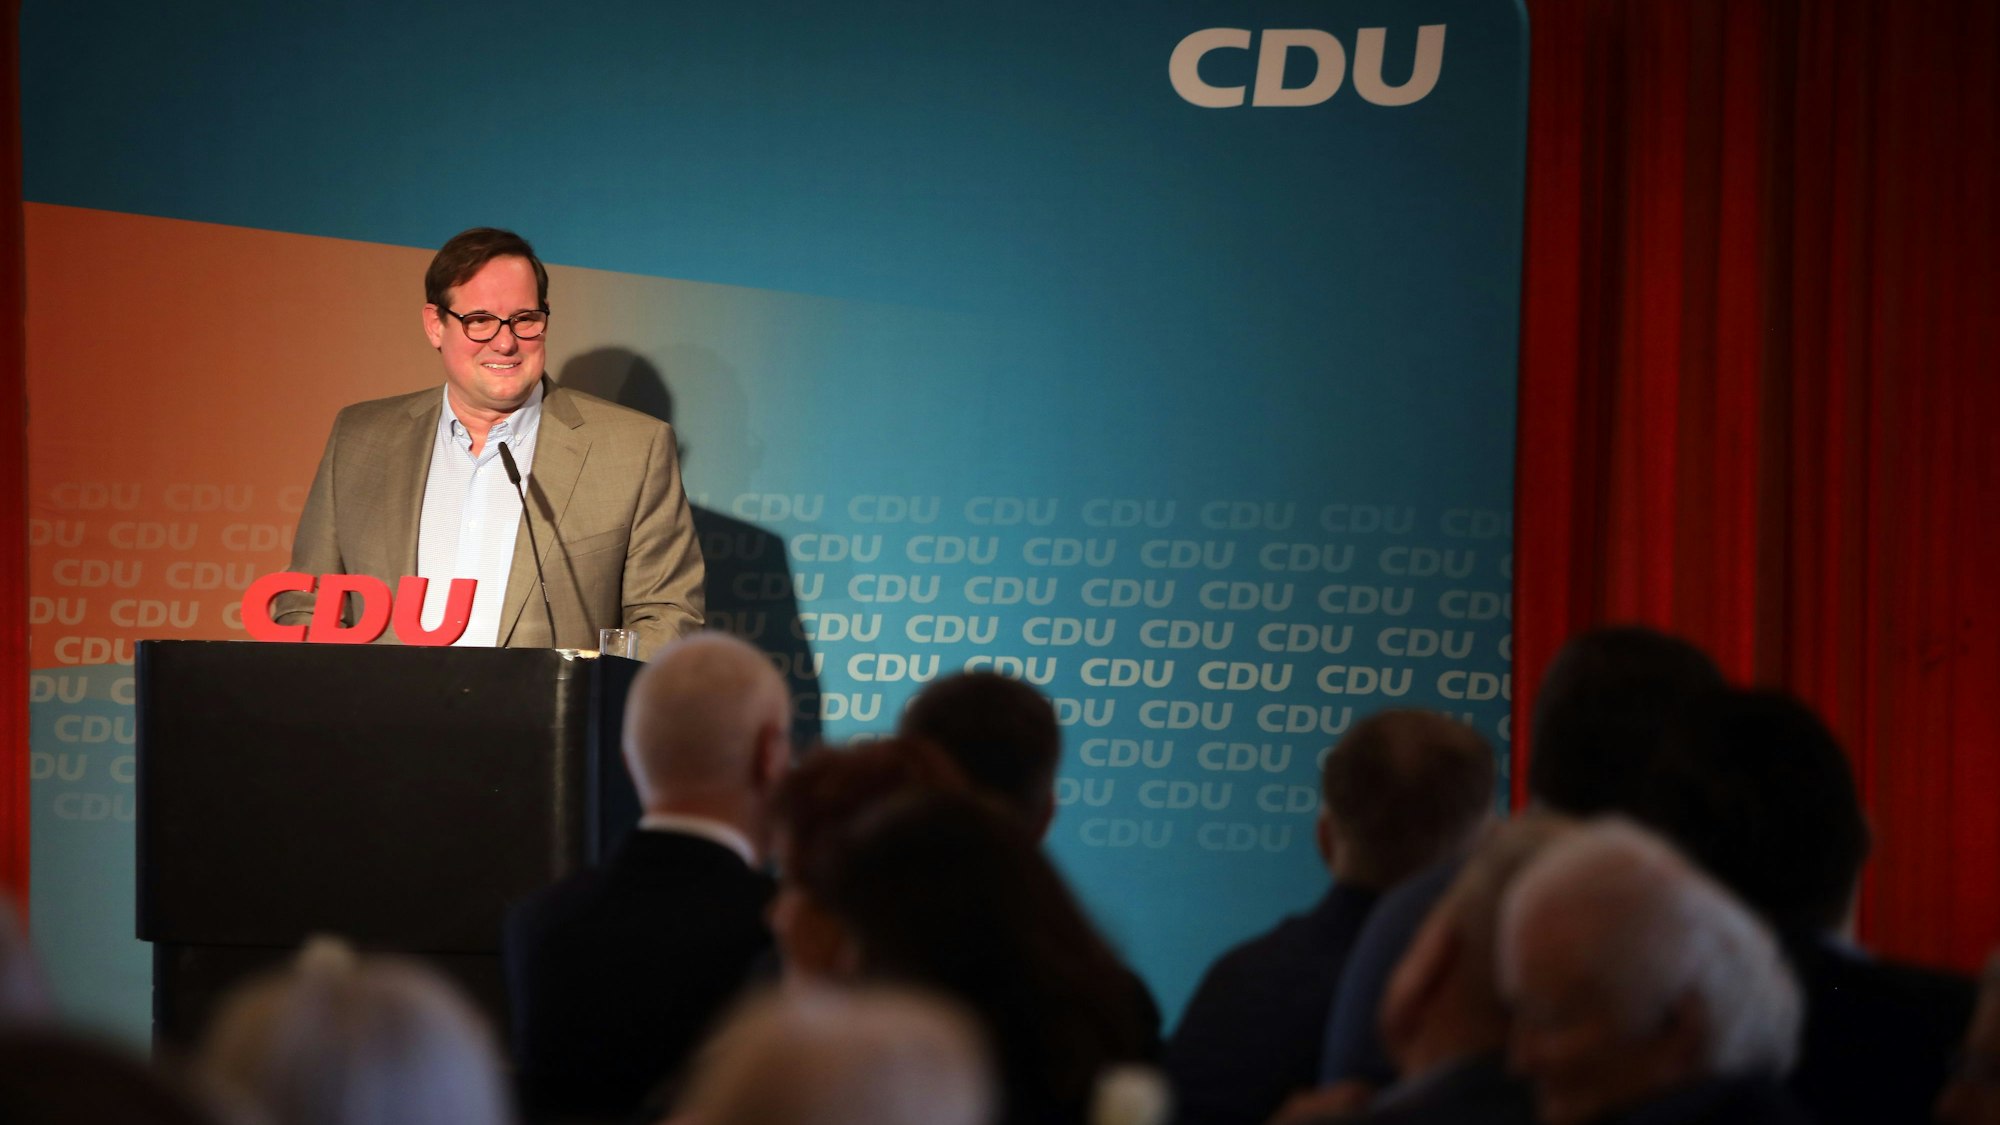 Politiker Vorsitzender der CDU-Landtagsfraktion Thorsten Schick steht an einem Rednerpult vor einer CDU-Wand.